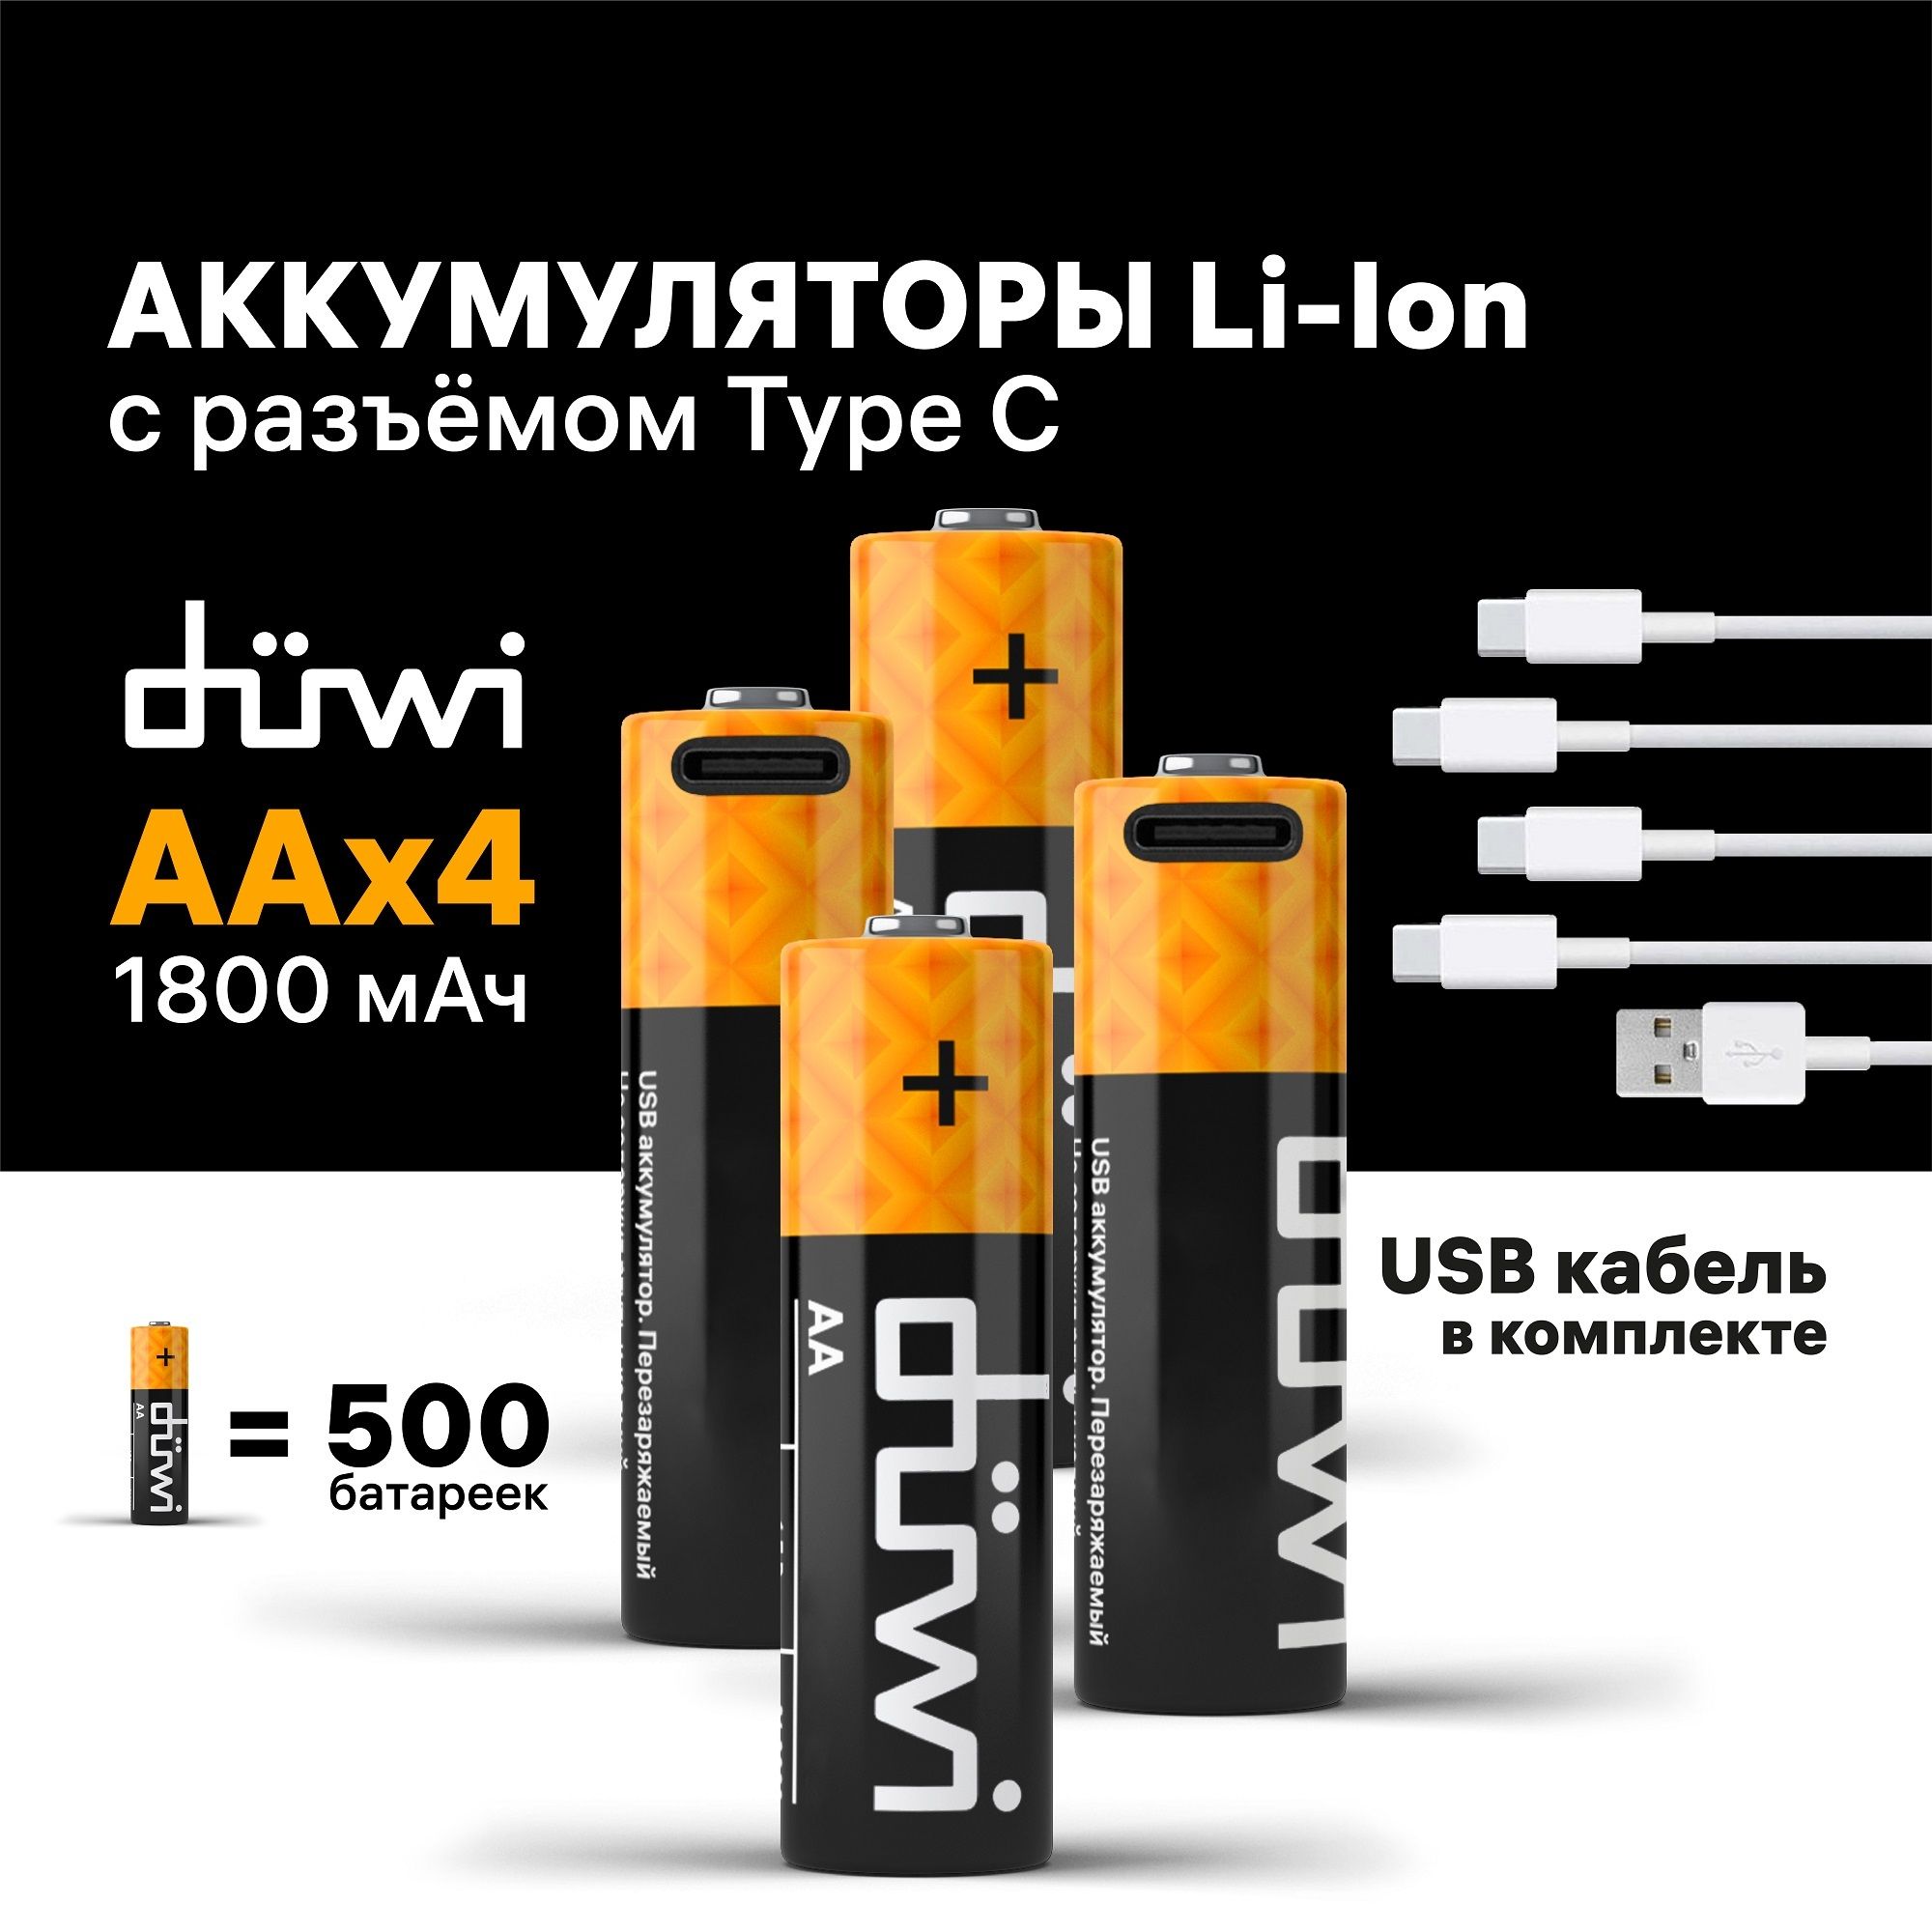 АккумуляторыUSB-Сduwi,Li-ion,АА,1,5В,1800мАч,4шт,кабельдлязарядки620112